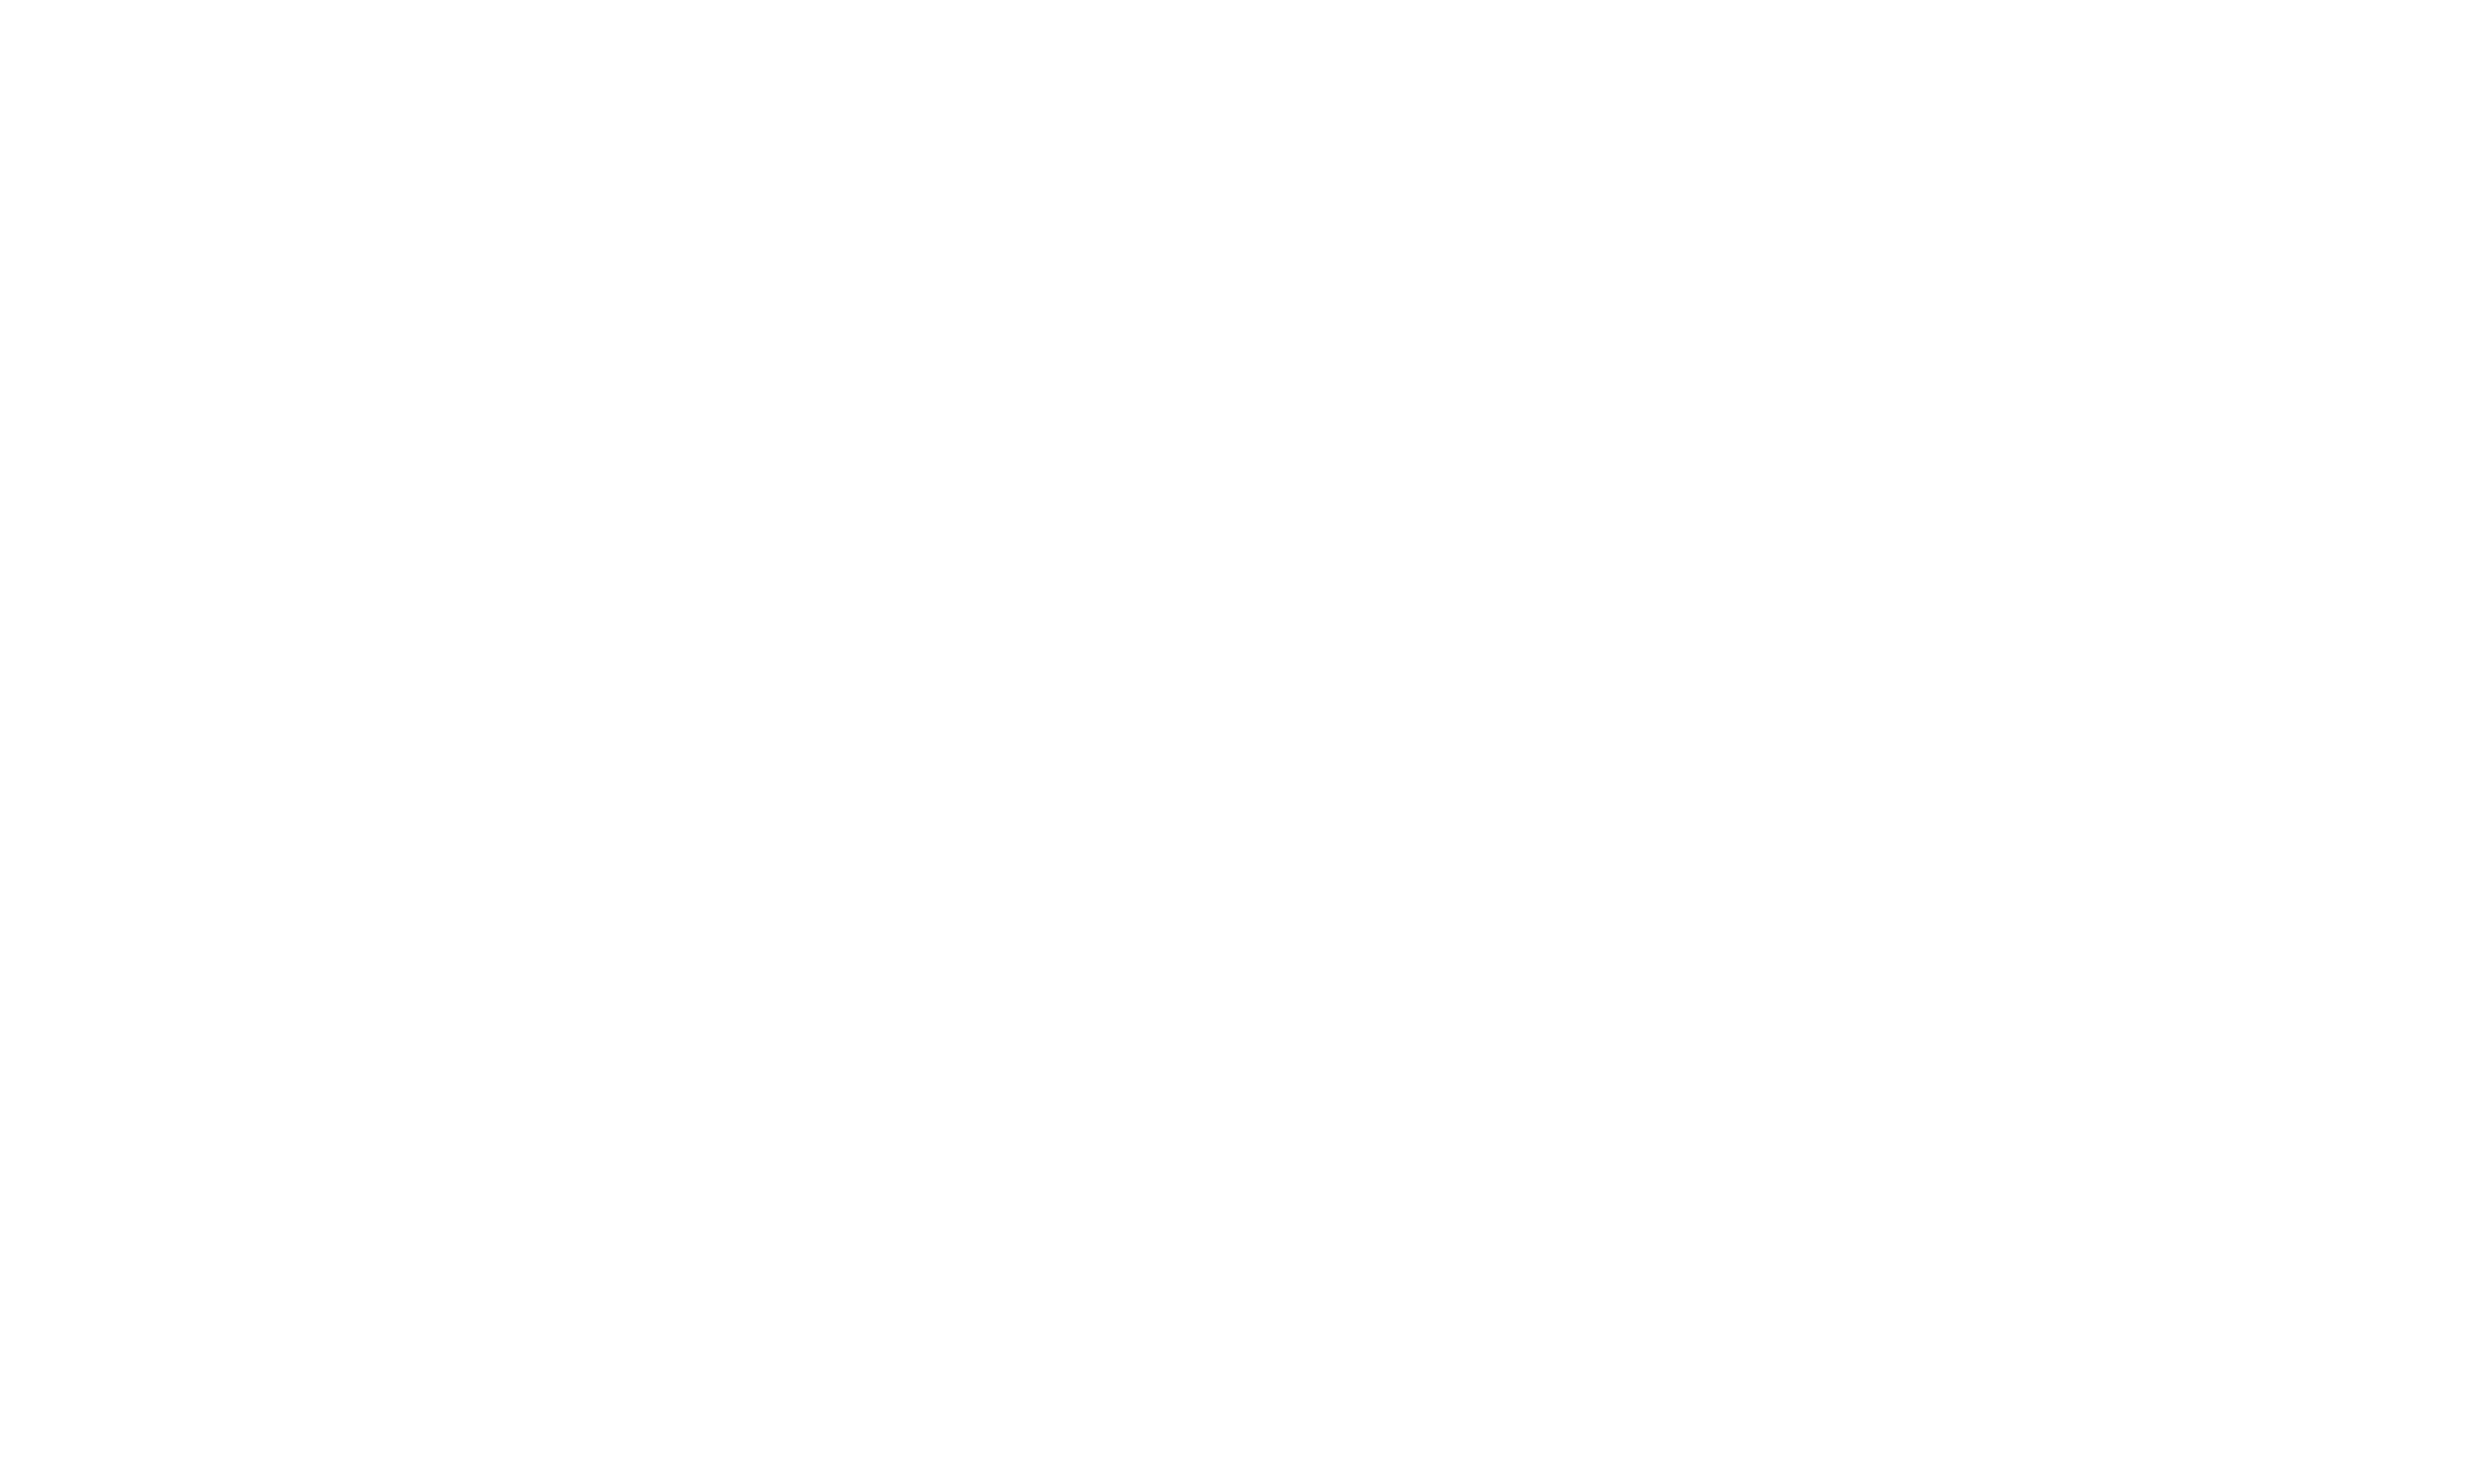 cv scoring logo